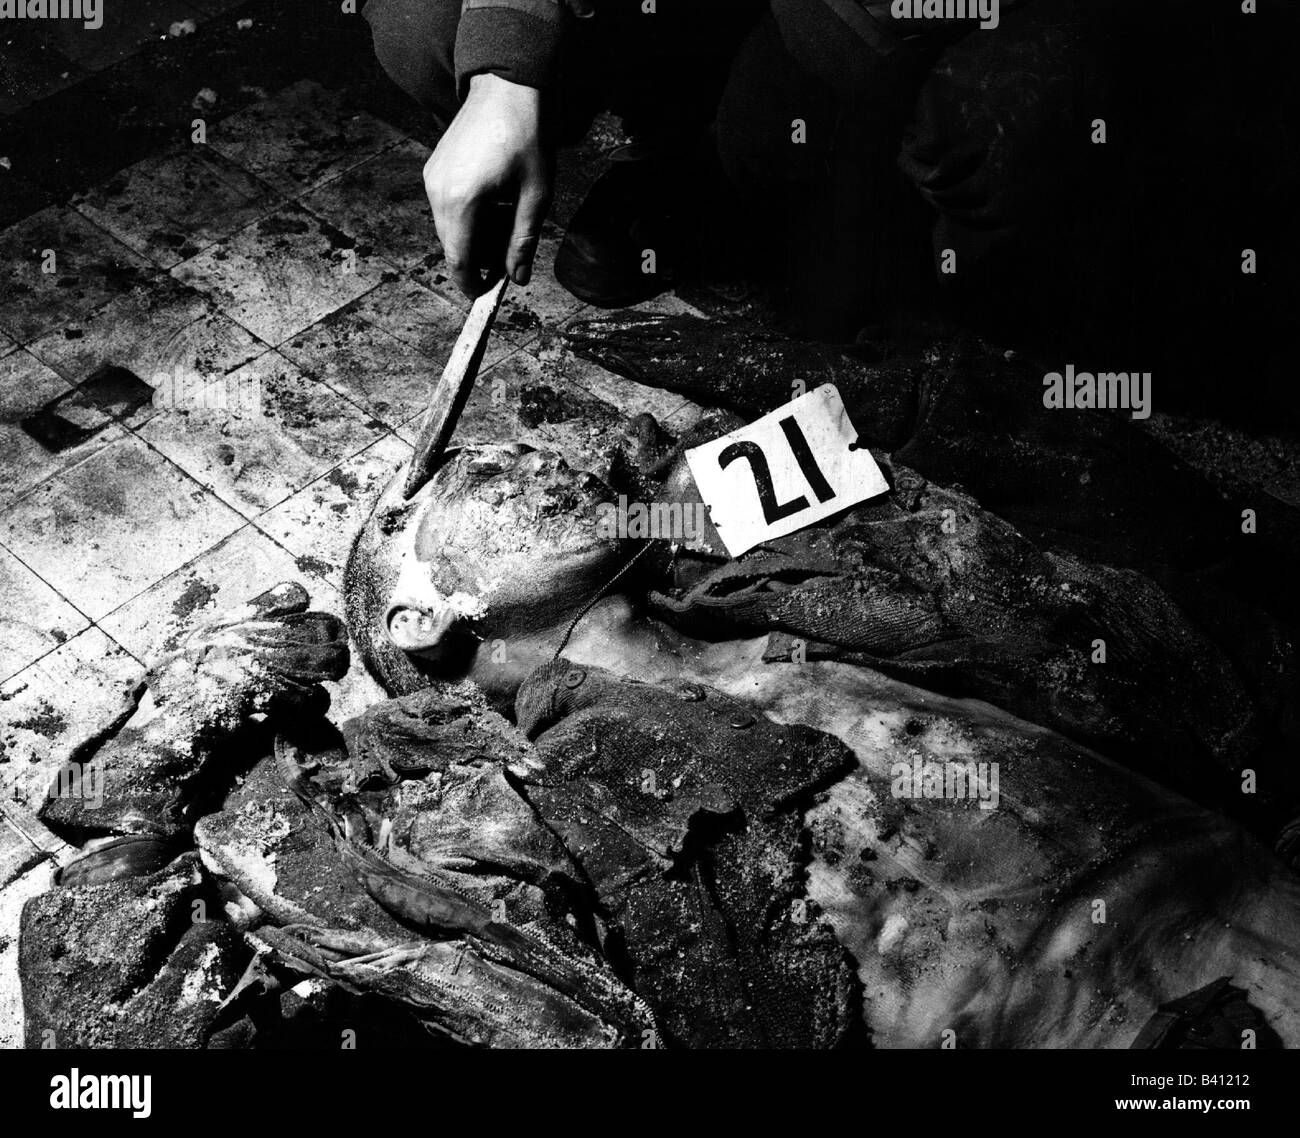 Événements, seconde Guerre mondiale / seconde Guerre mondiale, crimes de guerre, massacre de Malmedy 17.12.1944, cadavre d'un soldat américain, headshot, Banque D'Images